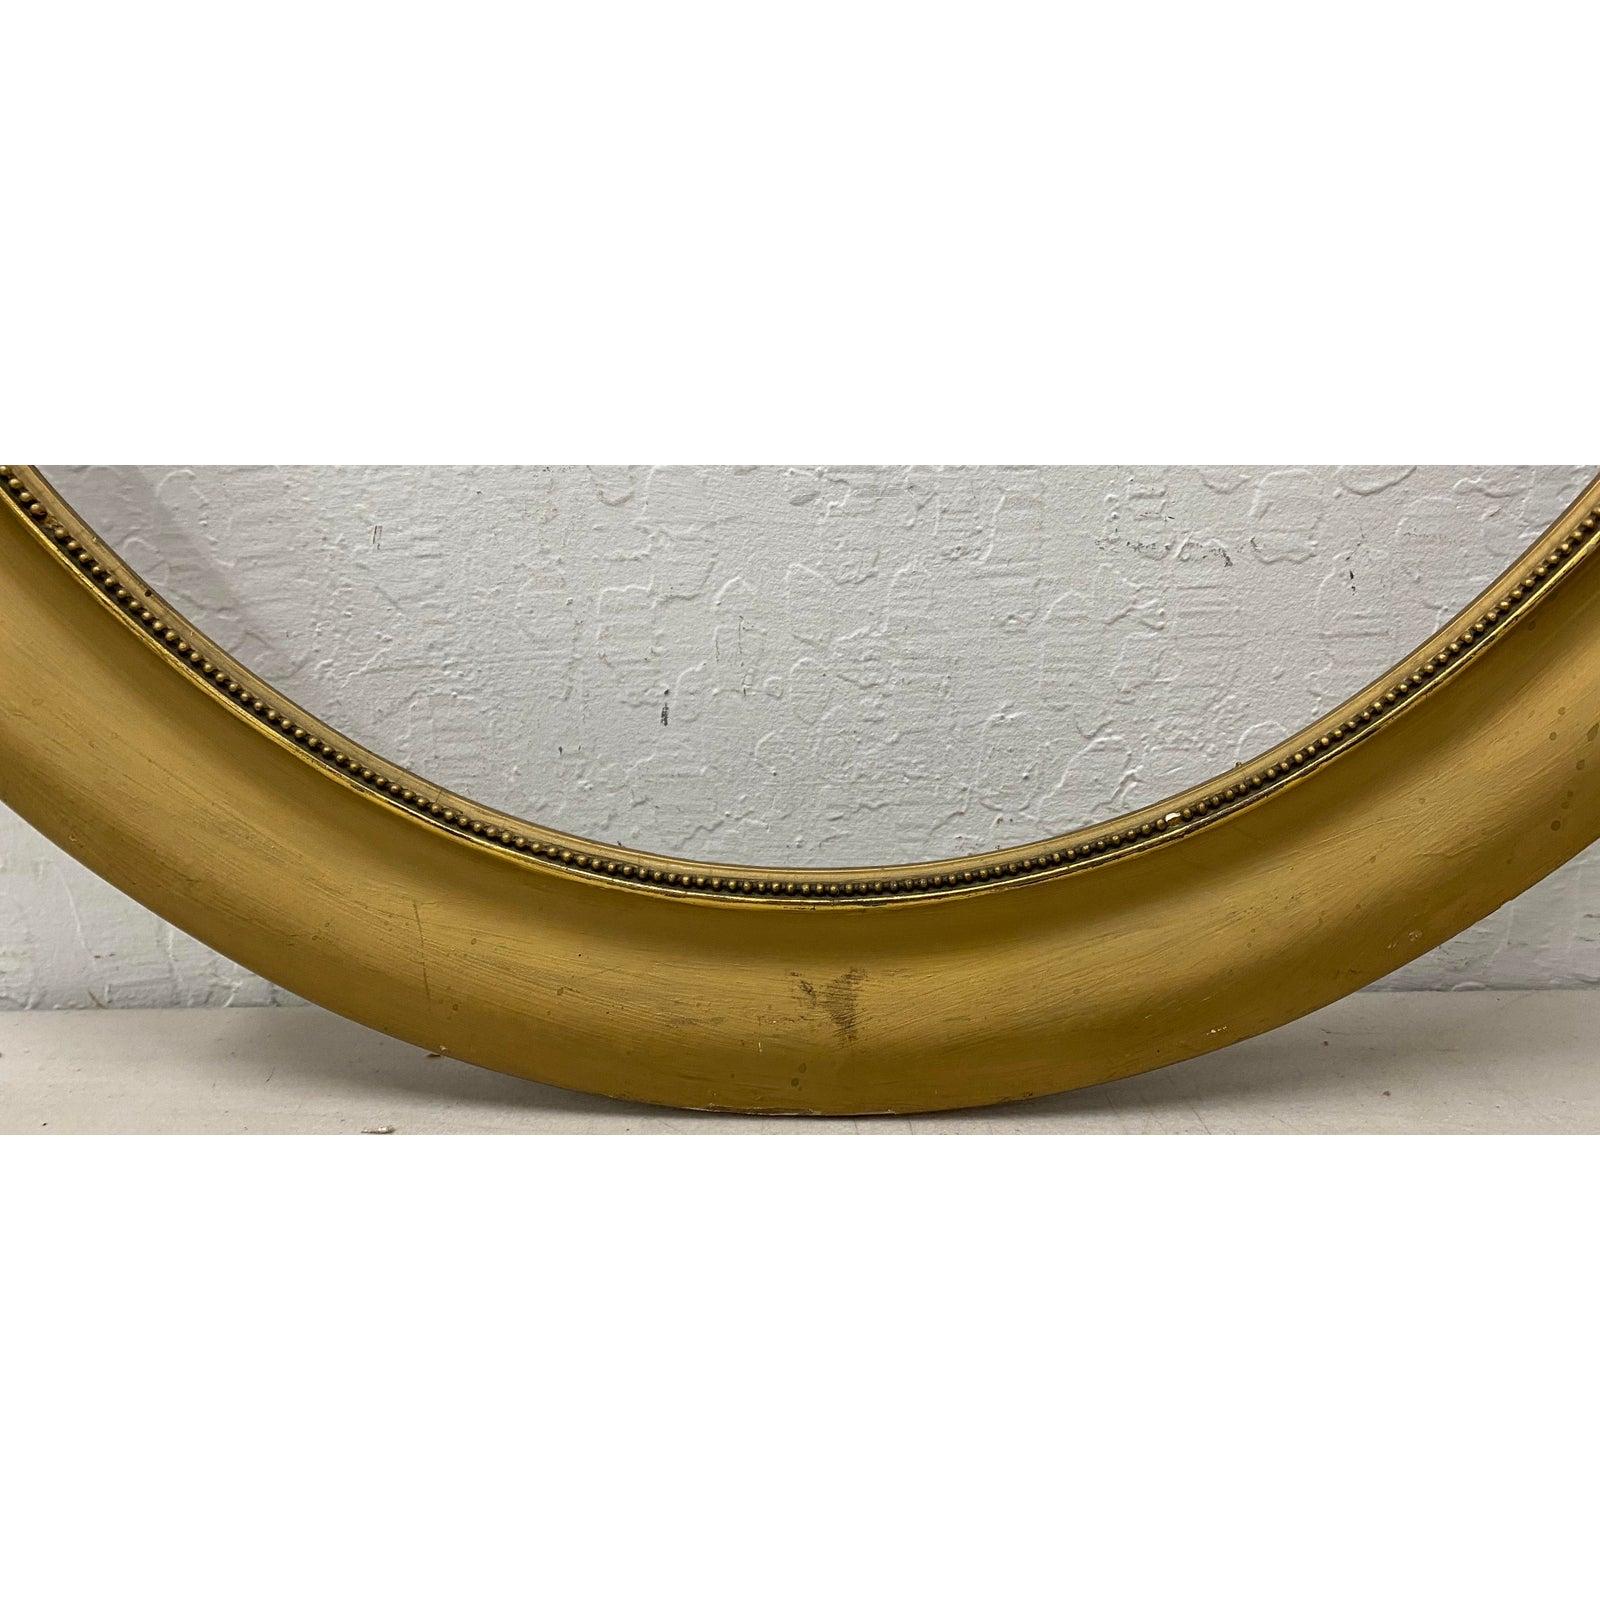 Goldbemalter ovaler Rahmen aus dem frühen 20.

Maße: Öffnung 21